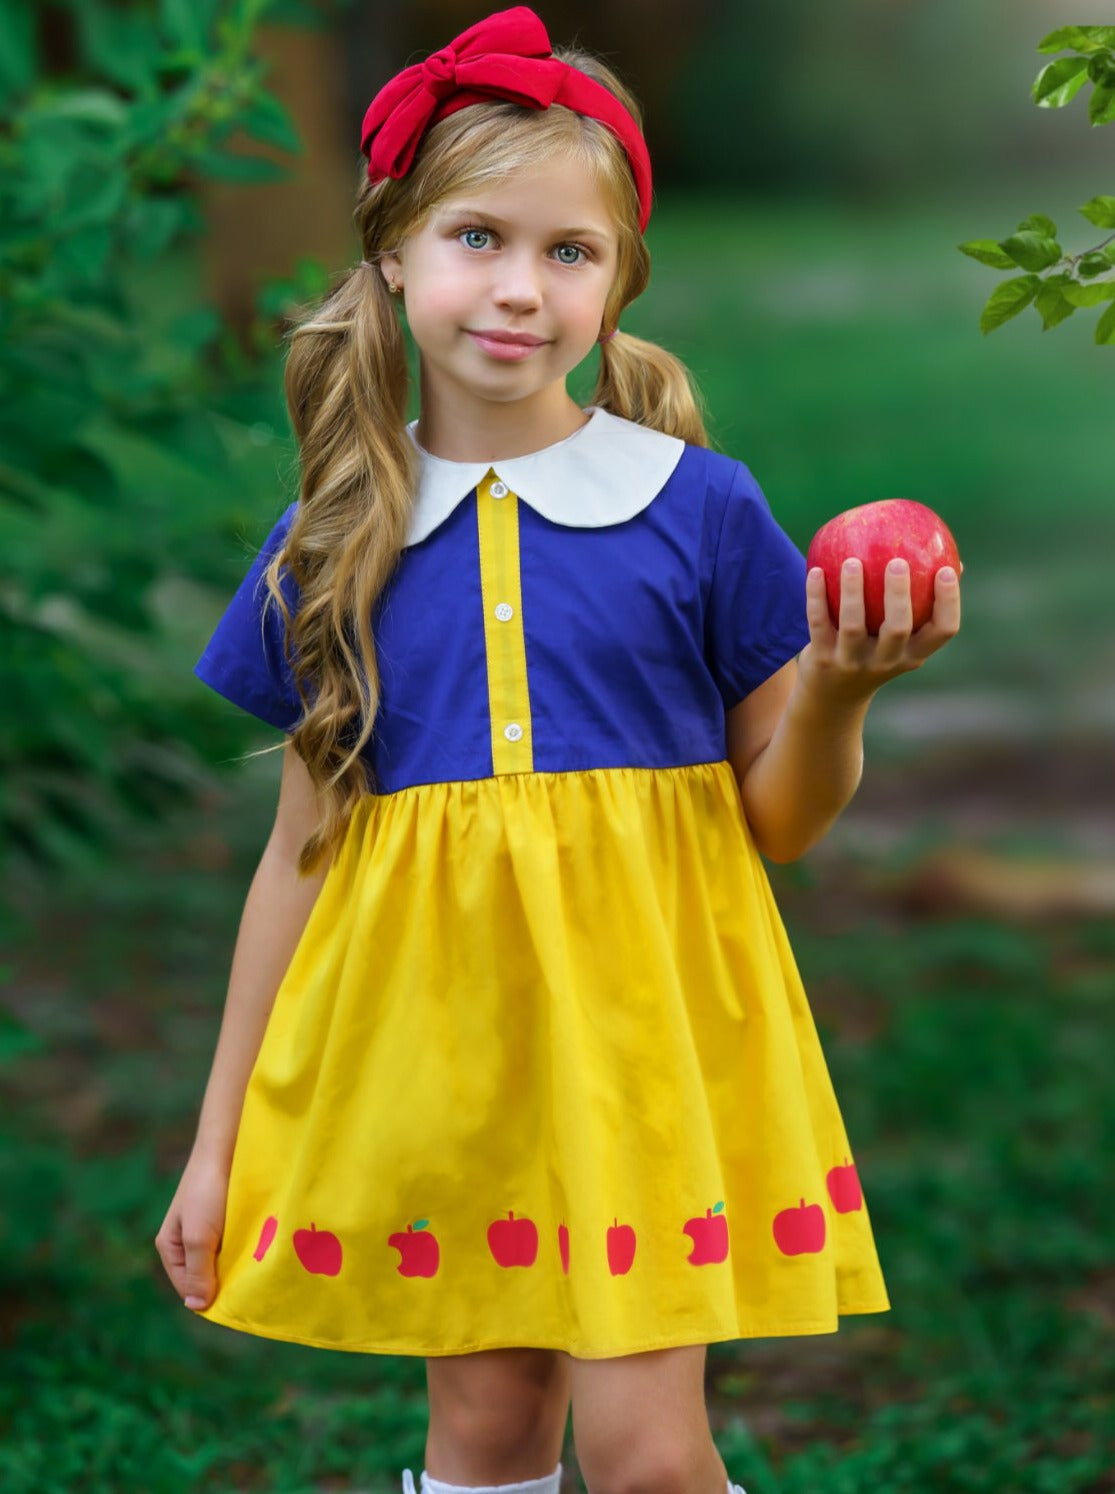 apple white costume for kids